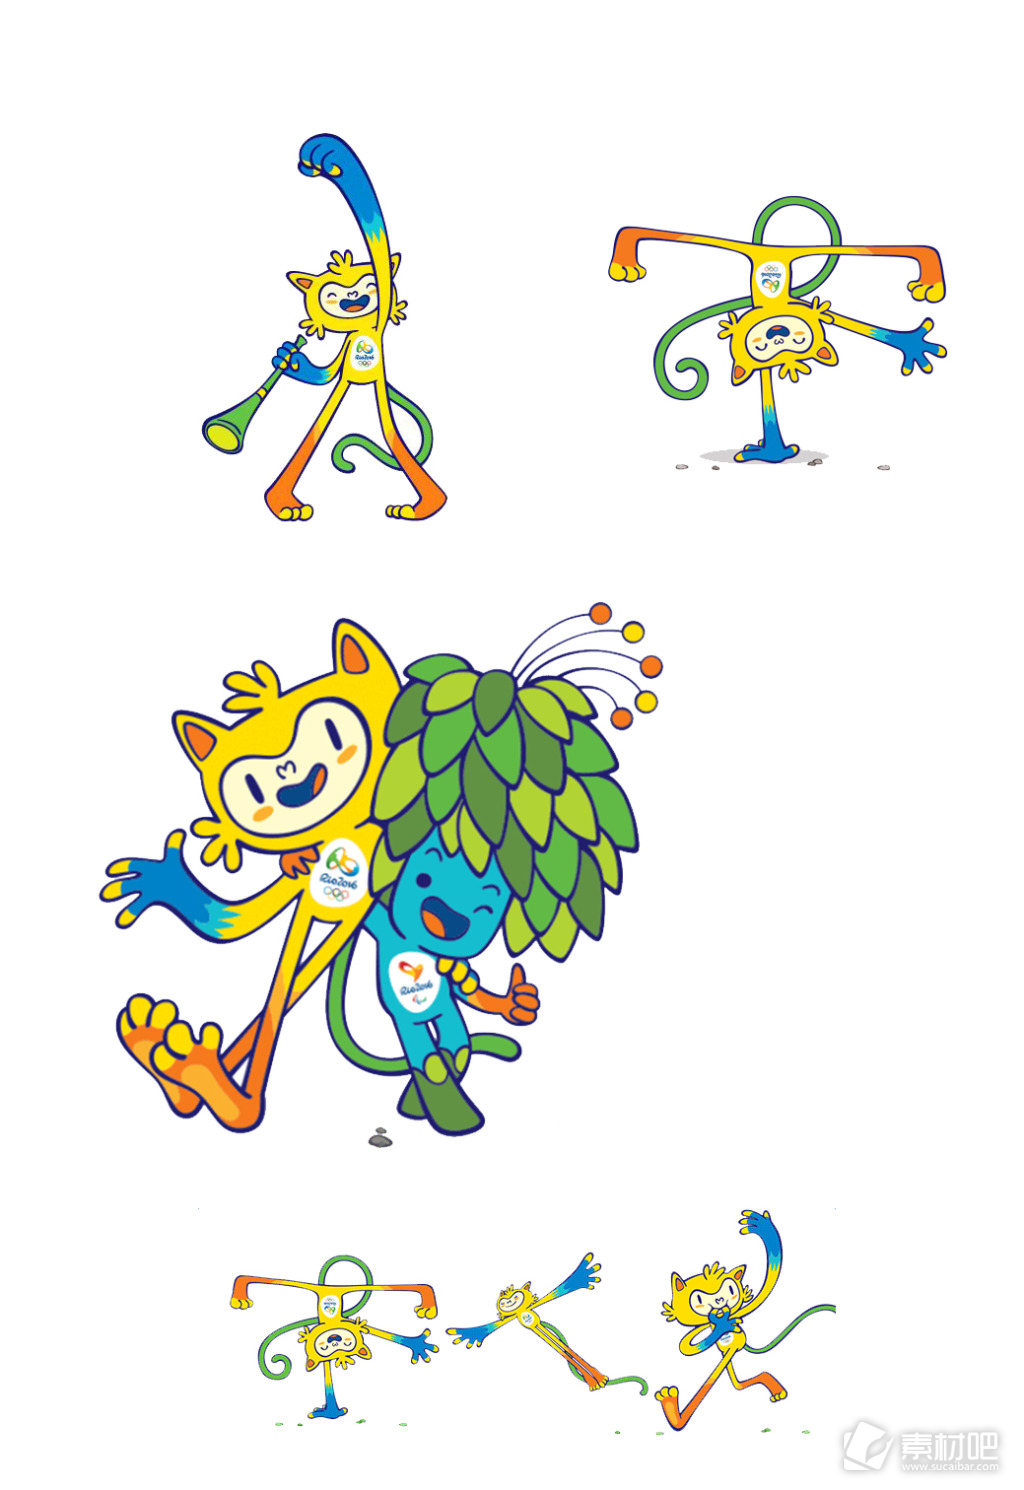 里约奥运会吉祥物psd素材